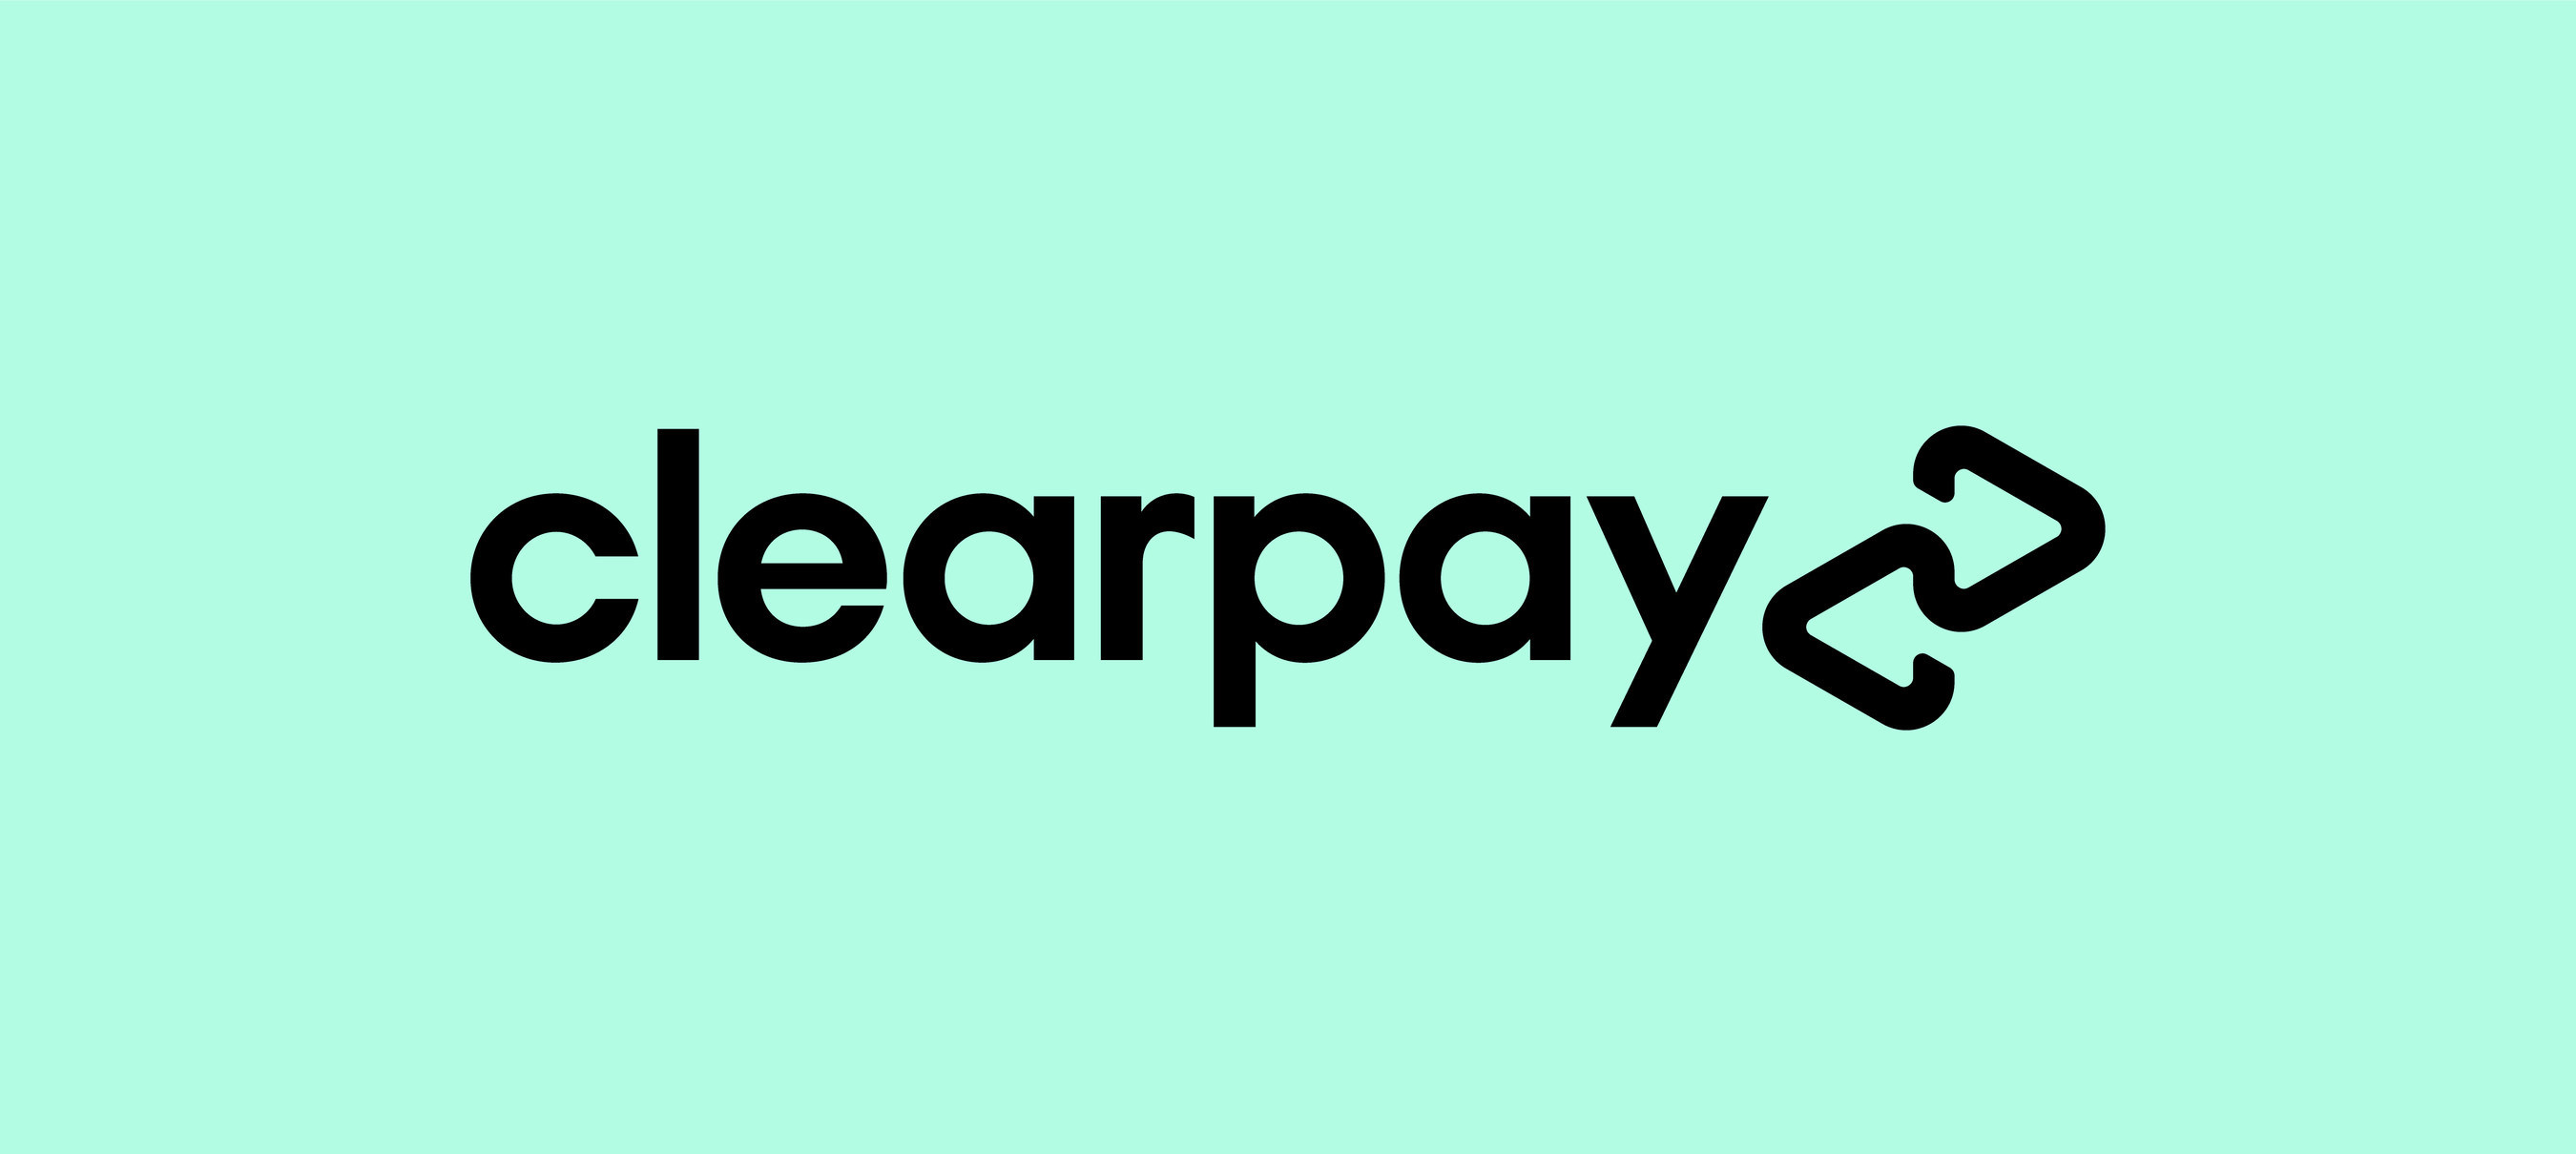 Clearpay offre une solution de paiements flexibles aux clients de l